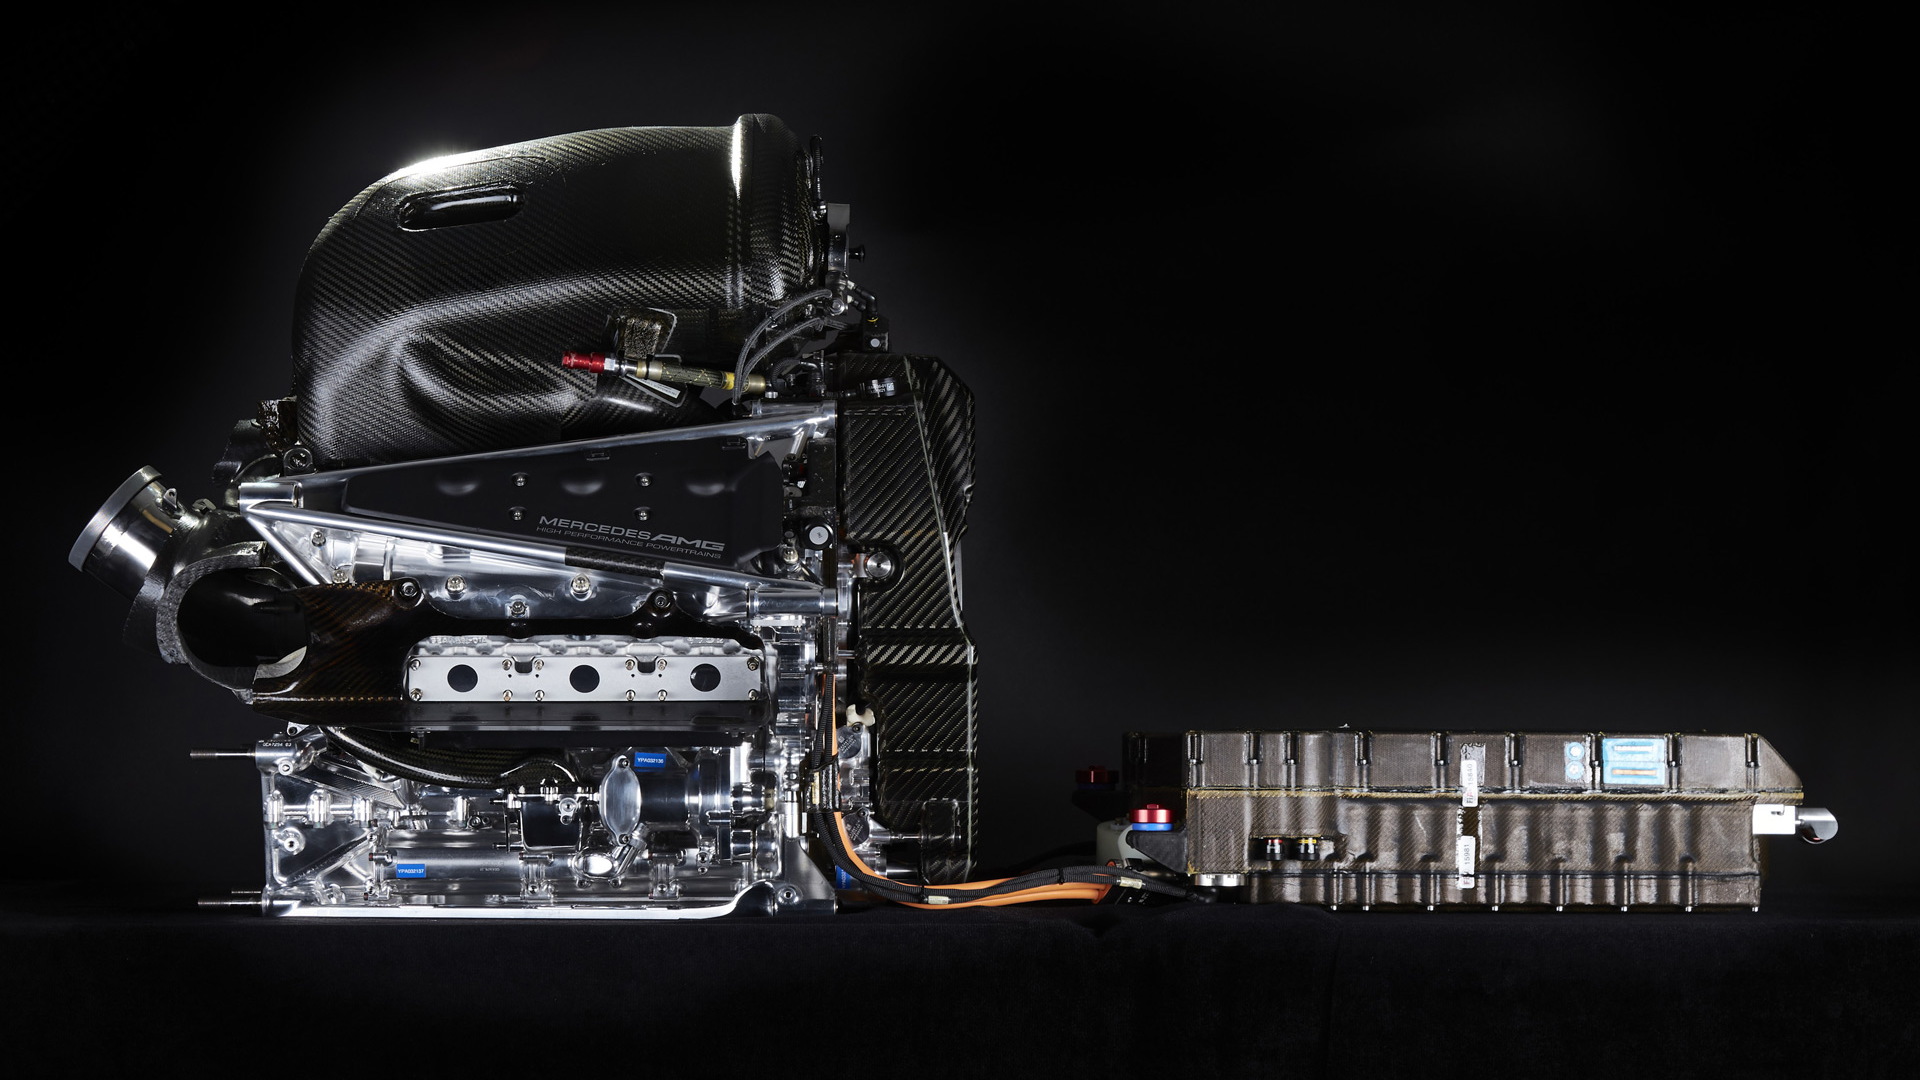 Mercedes AMG W07 Hybrid 2016 Formula One car power unit